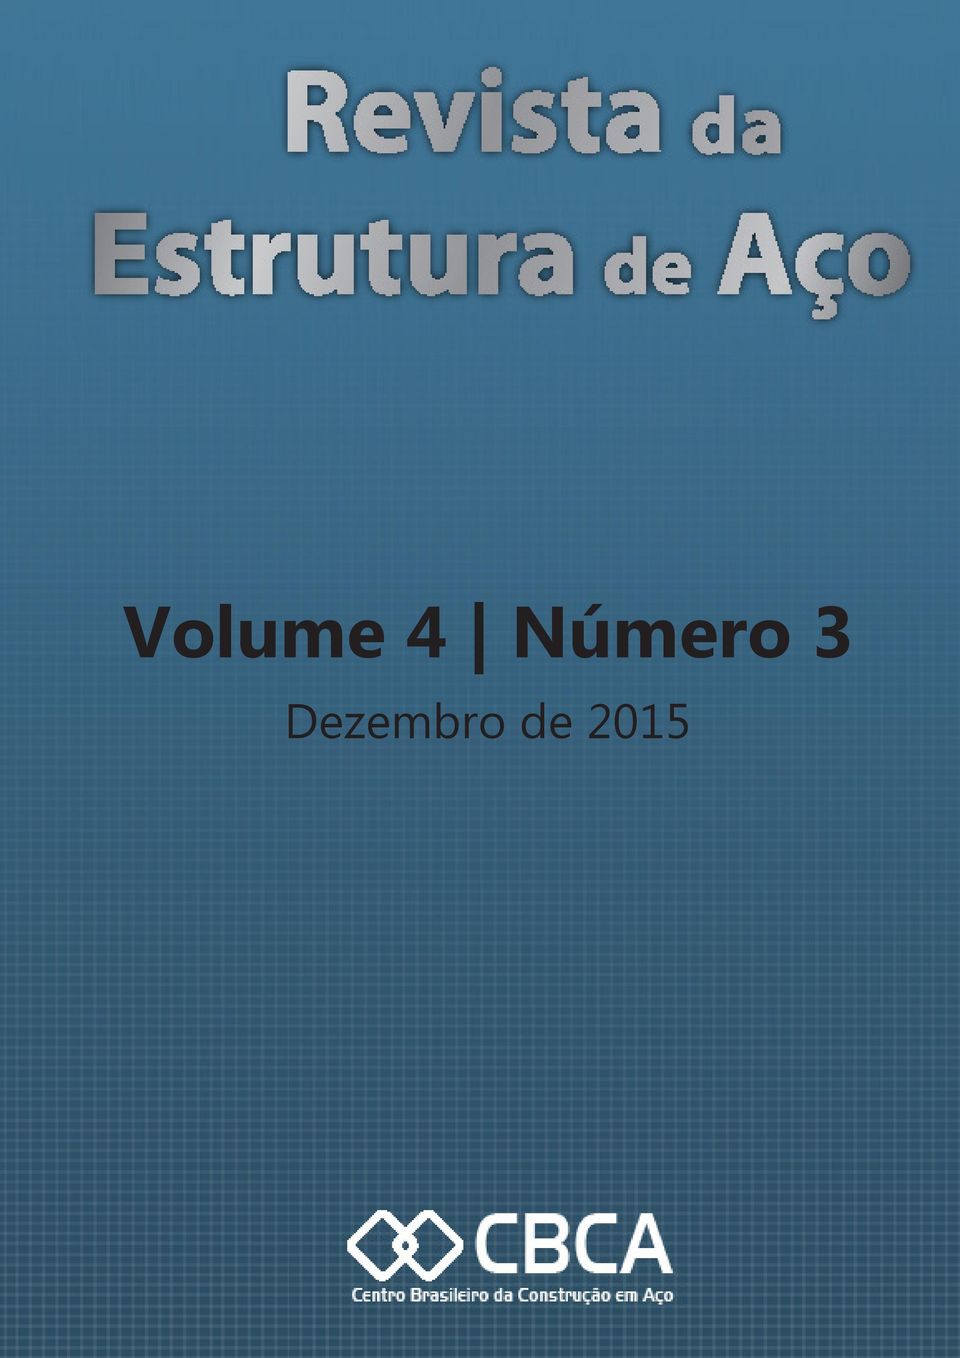 Volume 4 Número 3